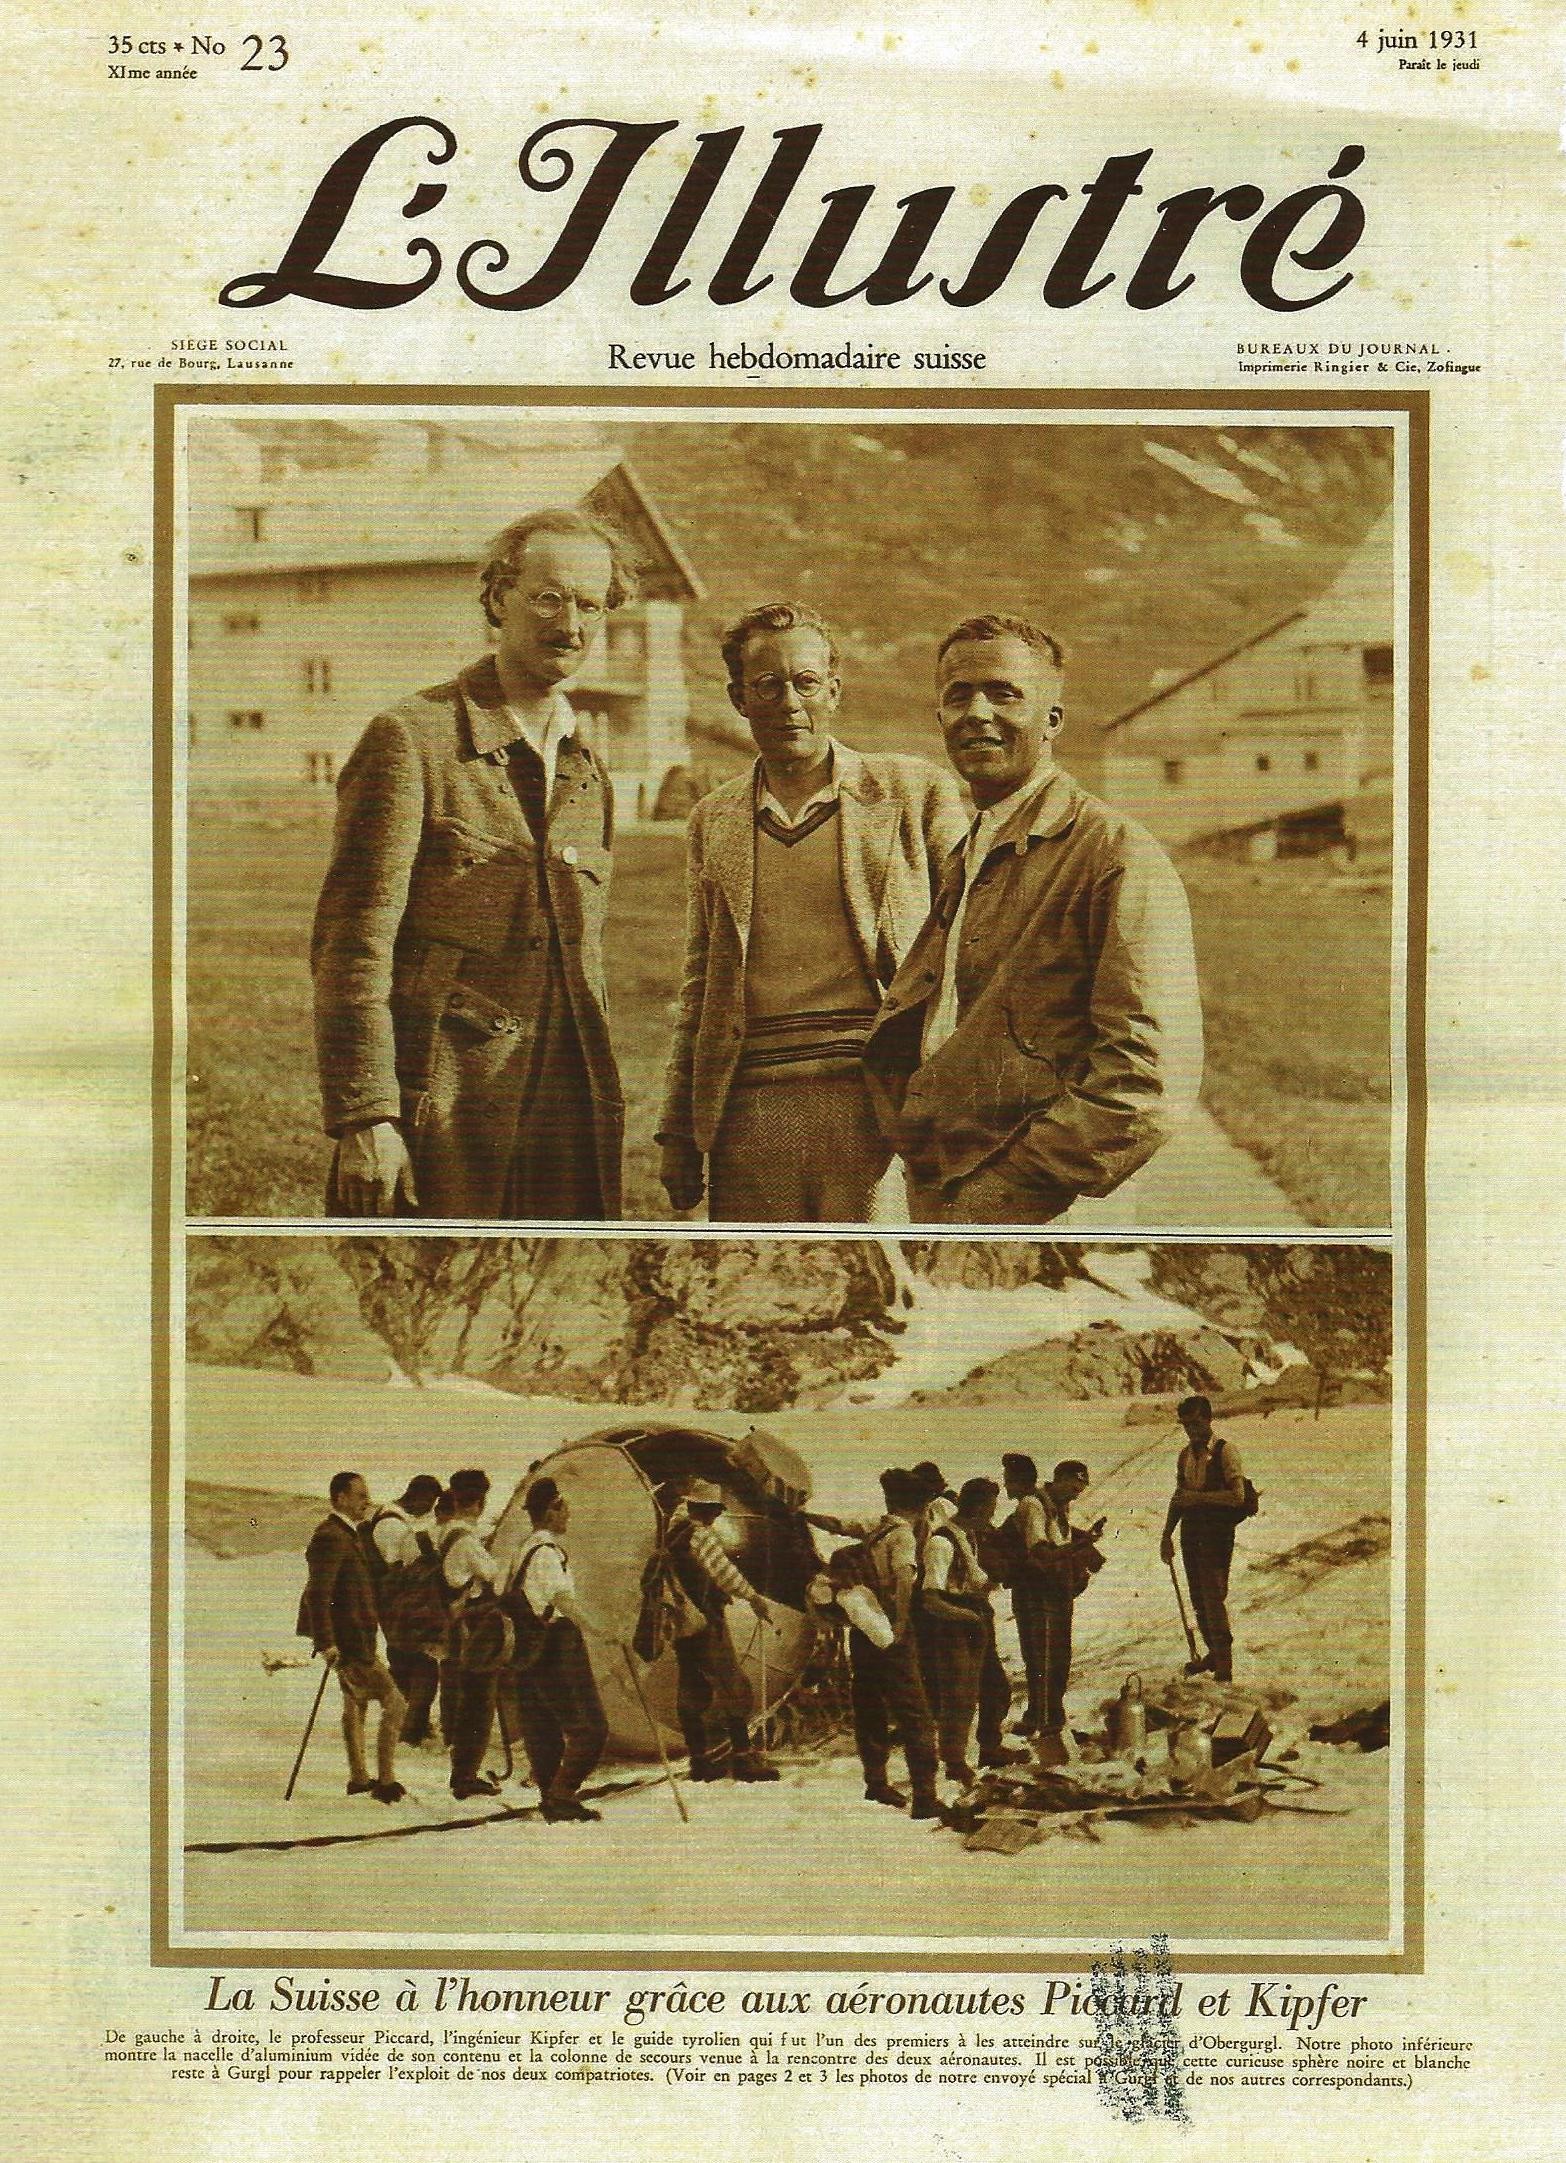 Von links: Piccard, Kipfer, ein Tiroler Bergührer